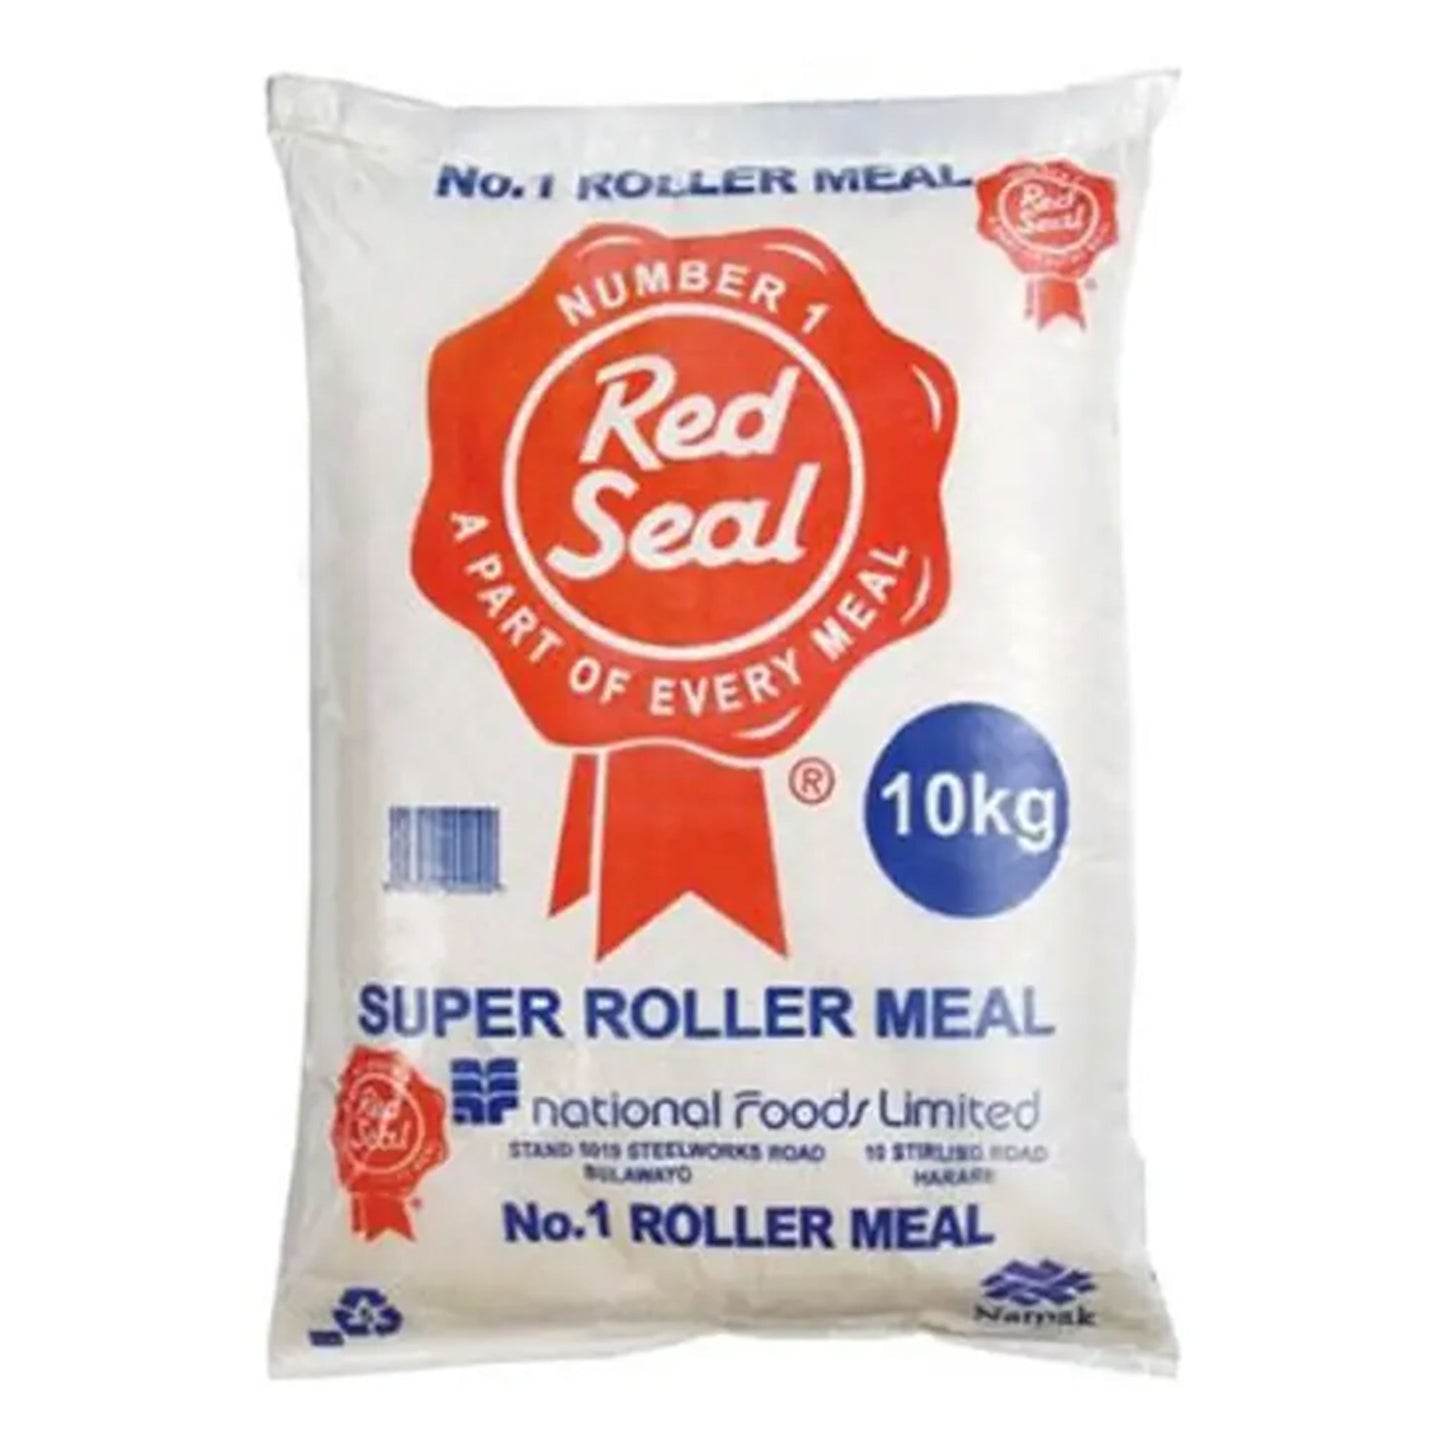 Super Roller Meal - 10kg